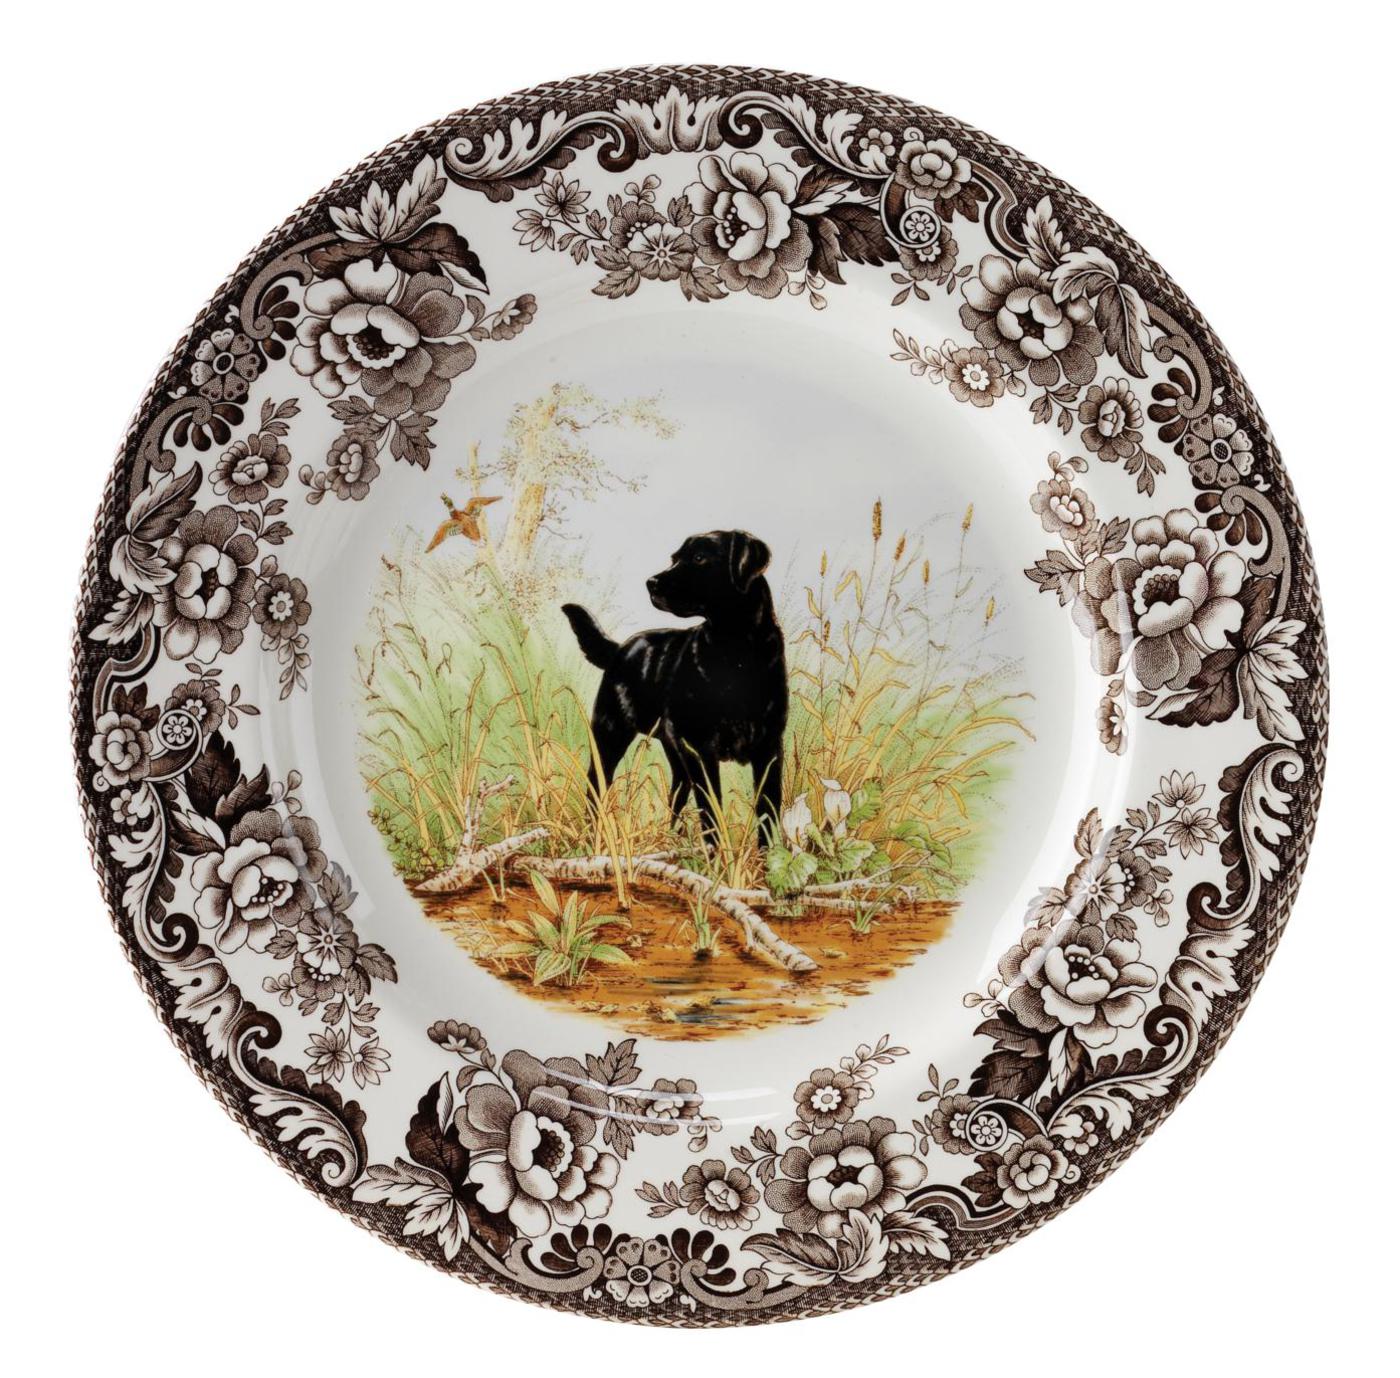 Spode Woodland Salad Plate, Black Labrador Retriever